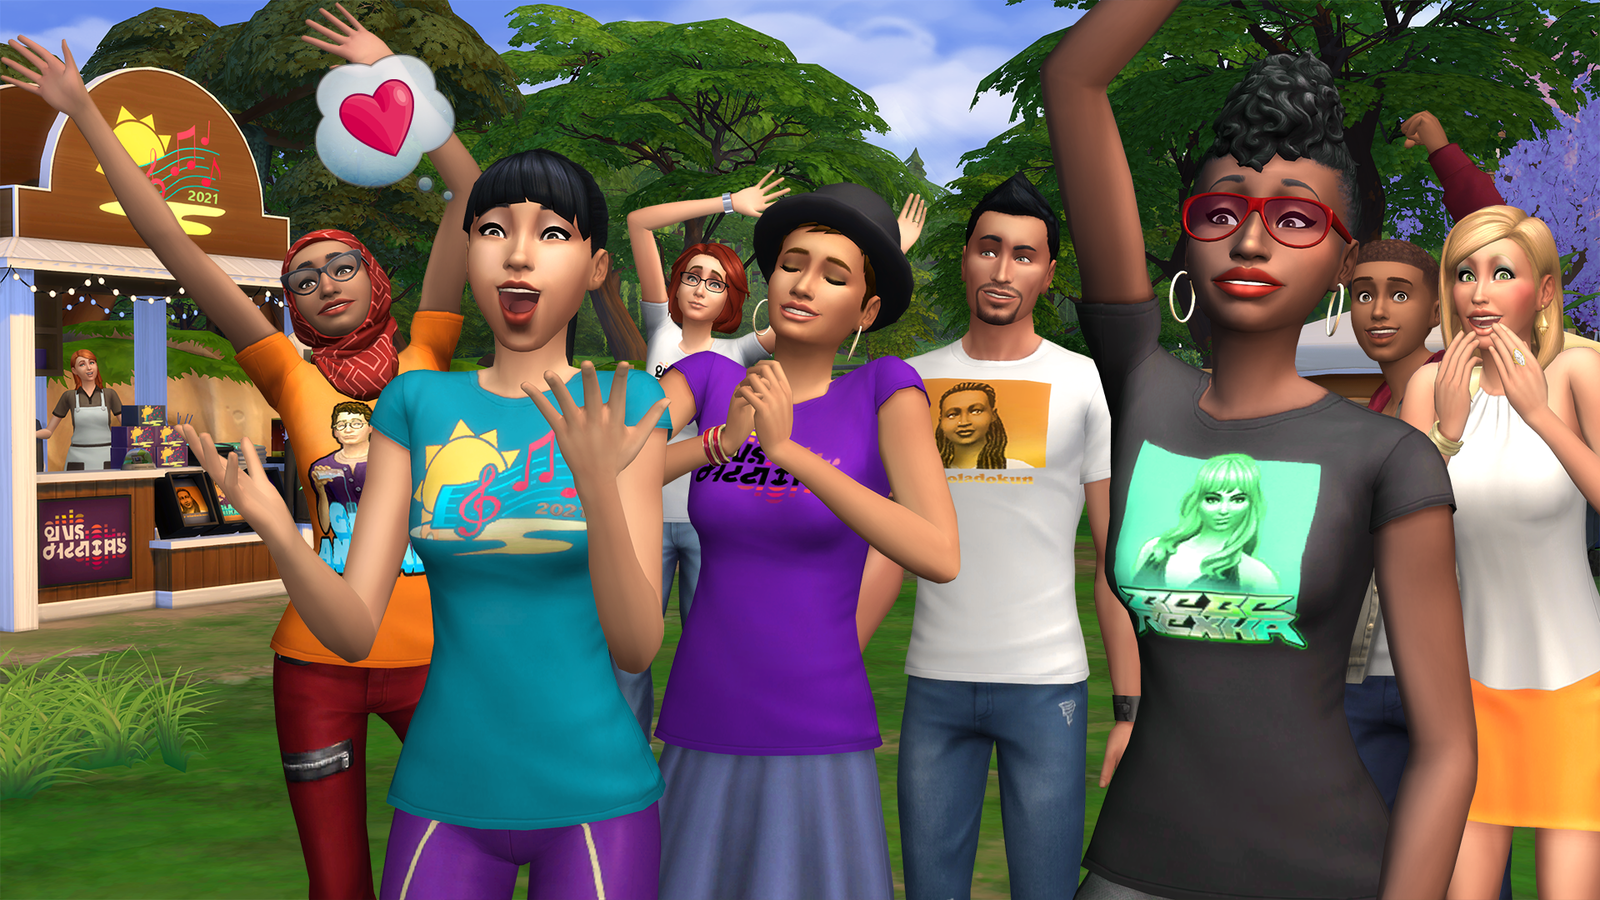 Novo Mod para The Sims 4 Expande o Catálogo do Modo Compra